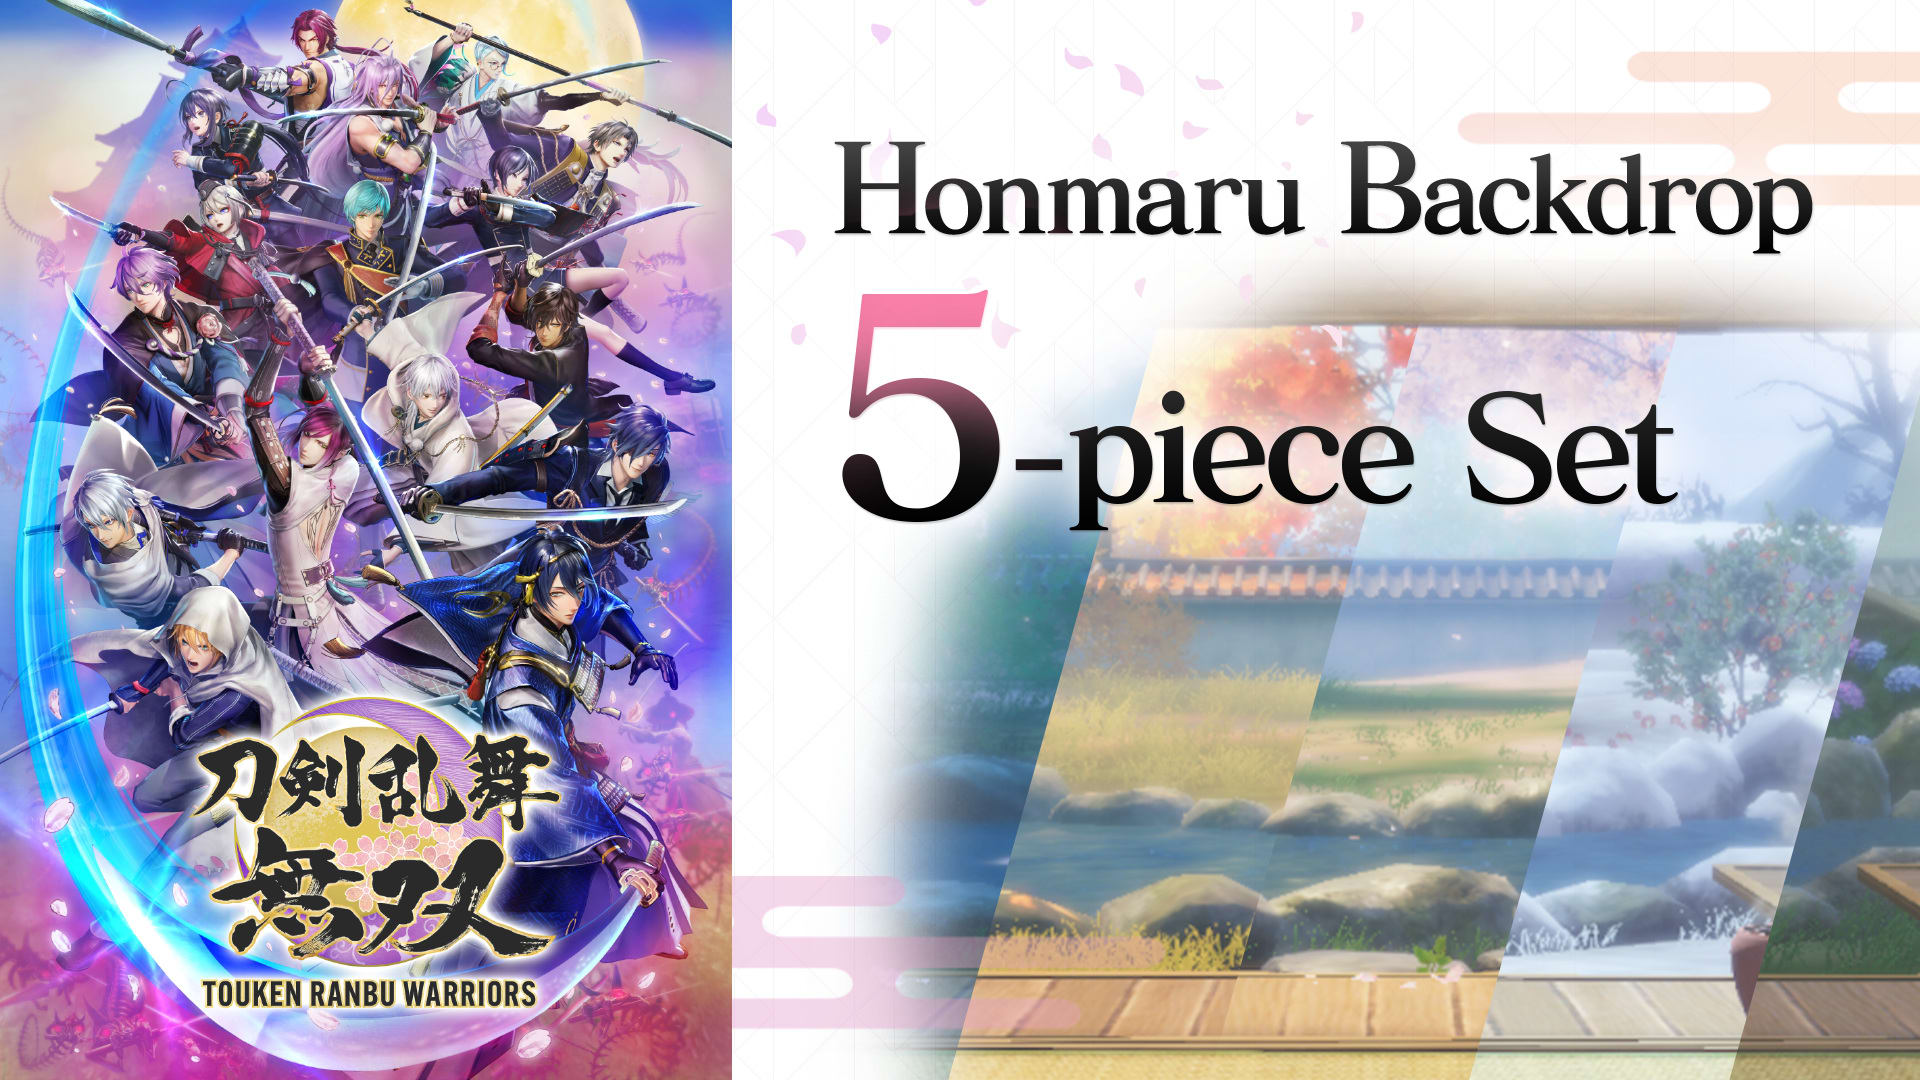 Honmaru Backdrop 5-piece Set